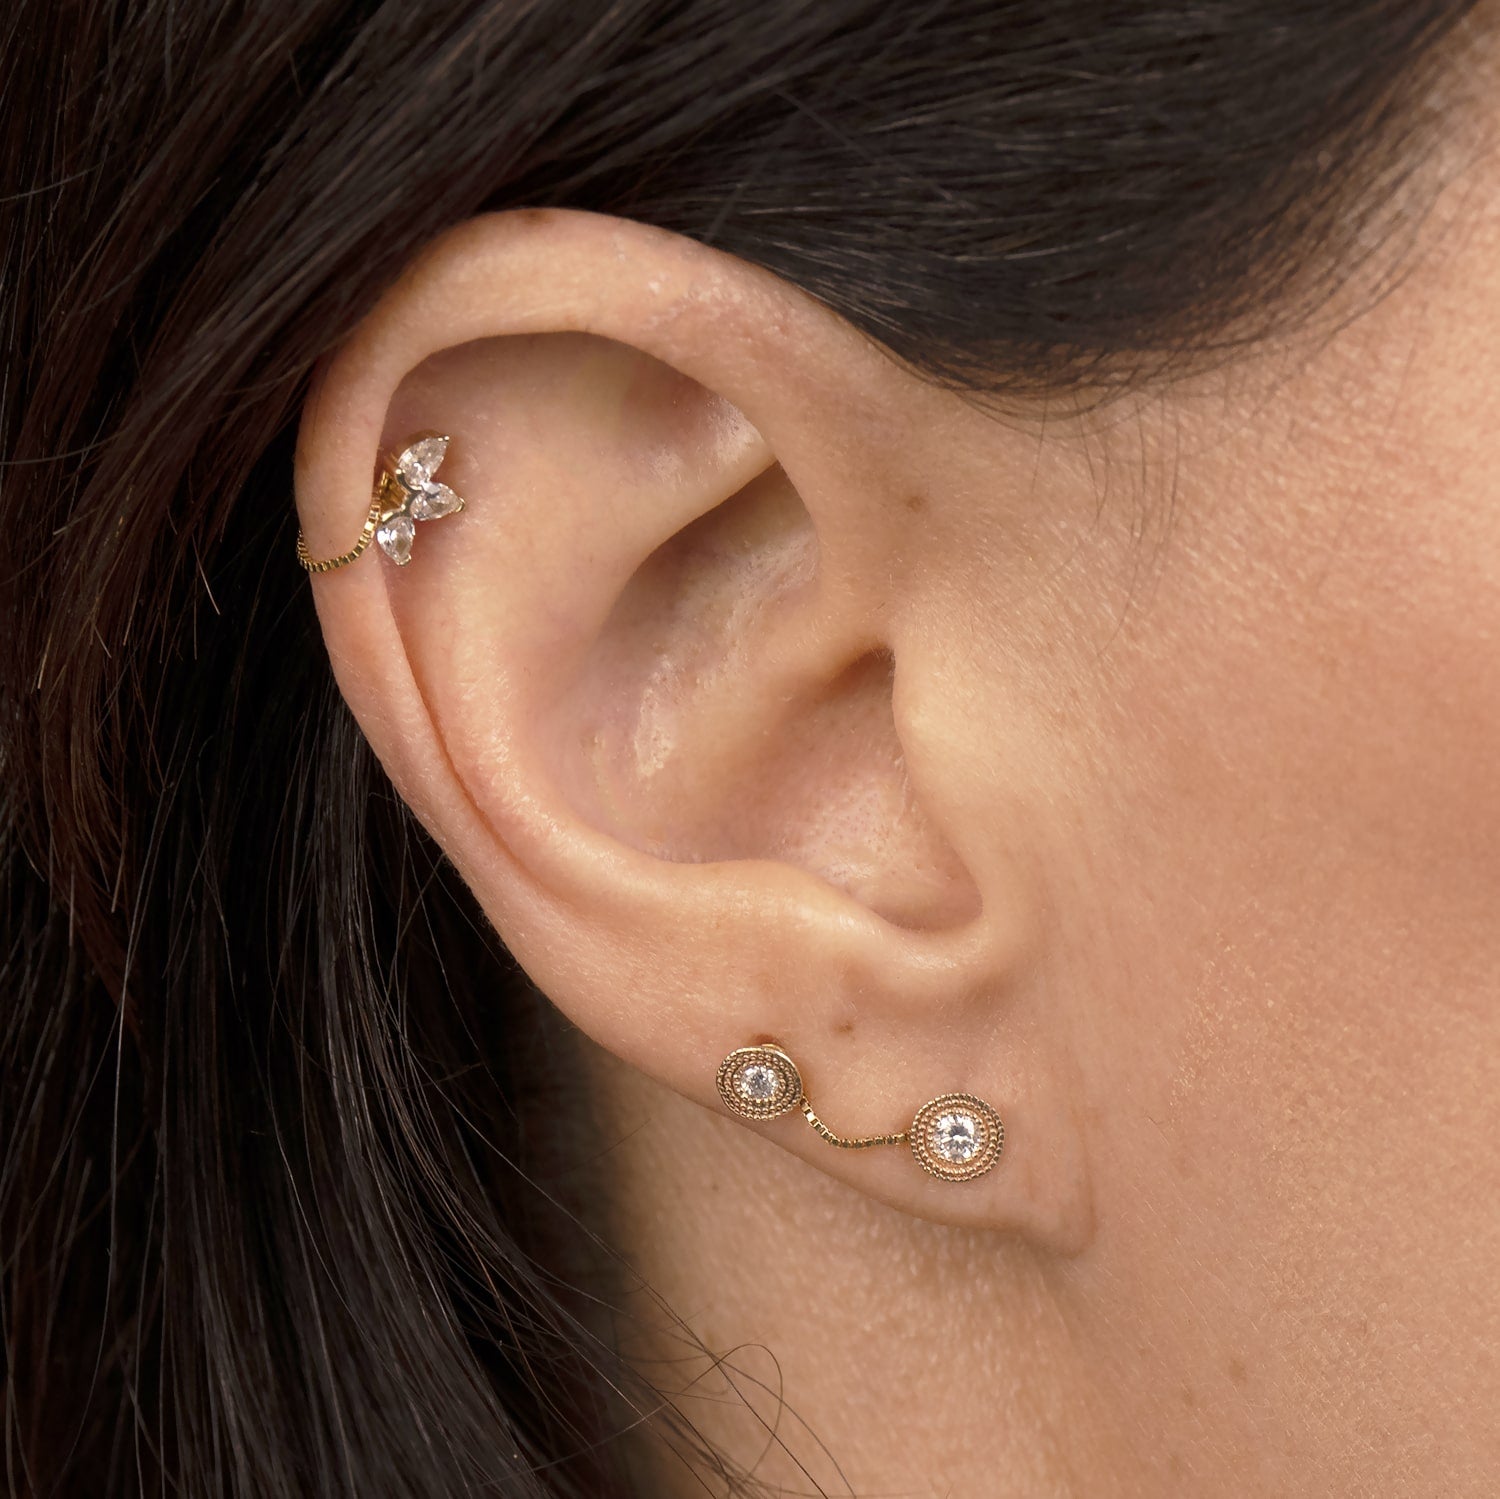 Cute Arrow Cartilage Helix Ear Piercing Jewelry Ideas for Women -  www.MyBodiArt.com | Ear piercings helix, Cartilage earrings stud, Small diamond  stud earrings